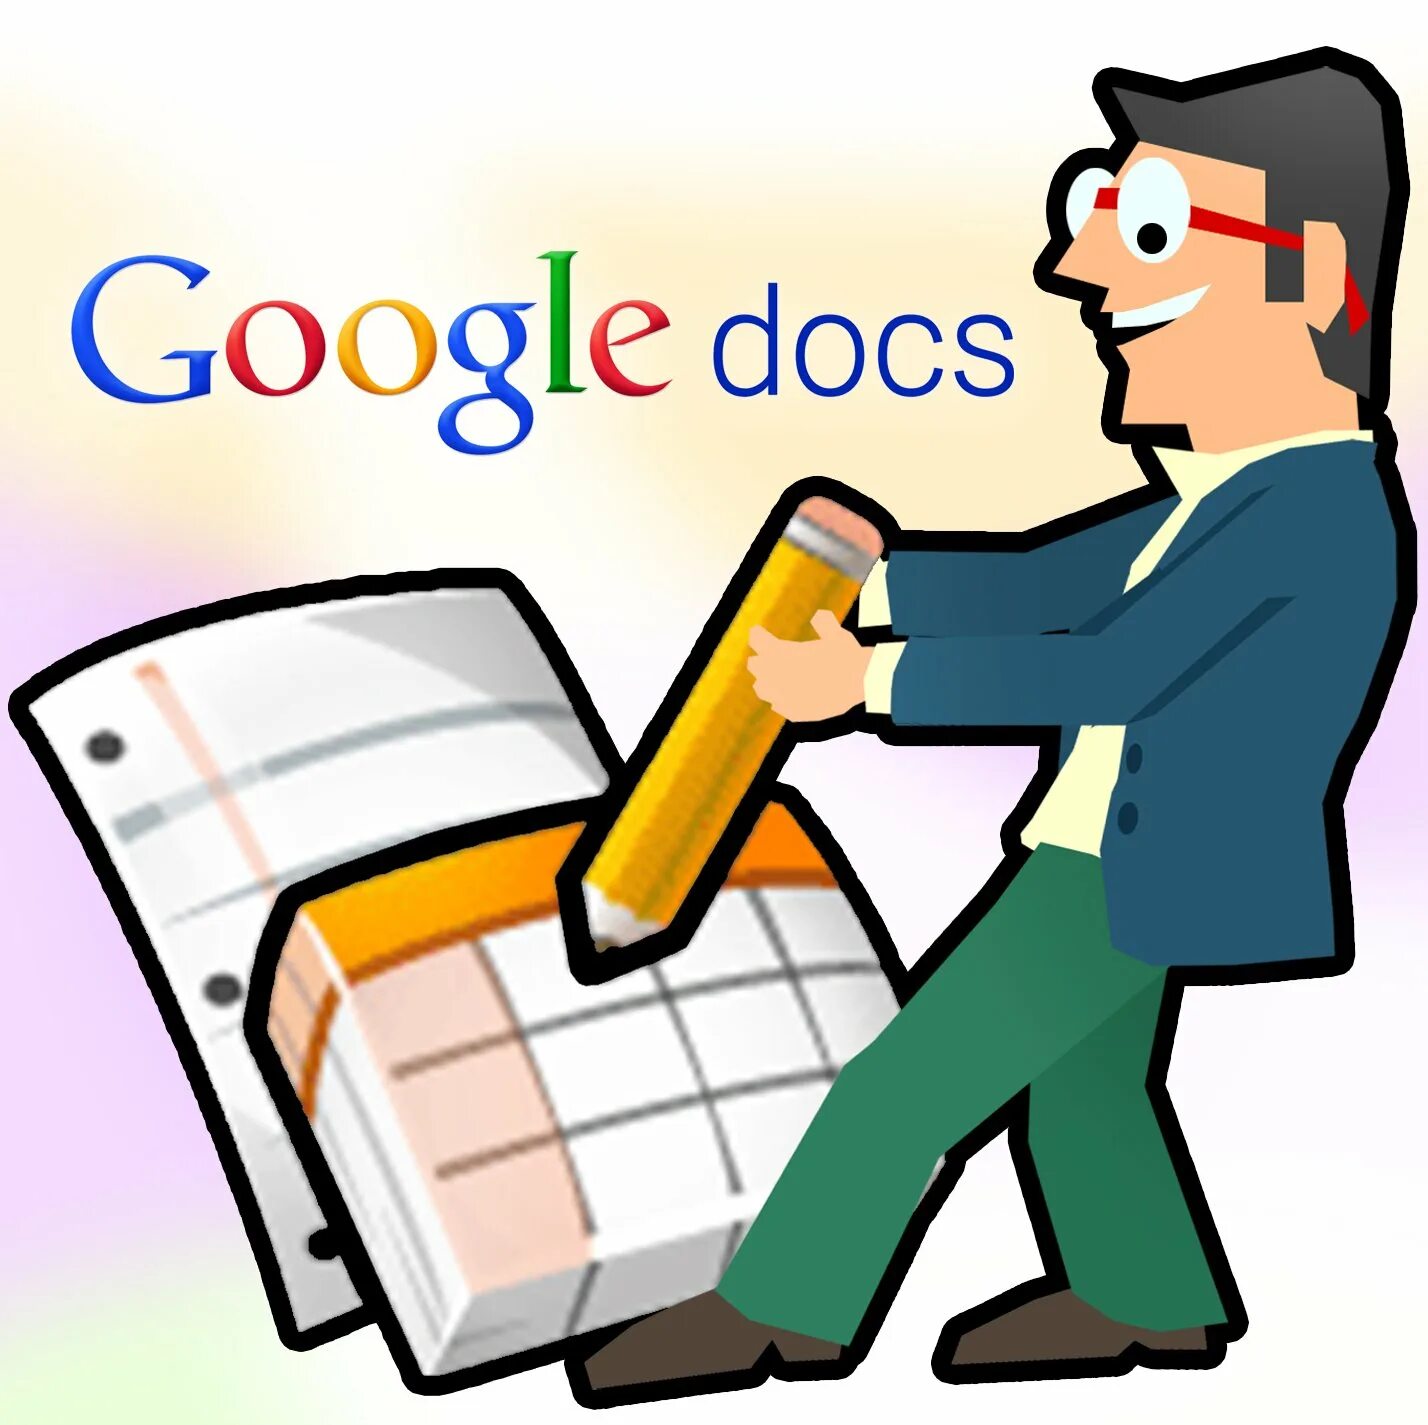 Гугл док ссылки. Google docs. Google документы картинки. Google docs документы. Гугл docs картинка.